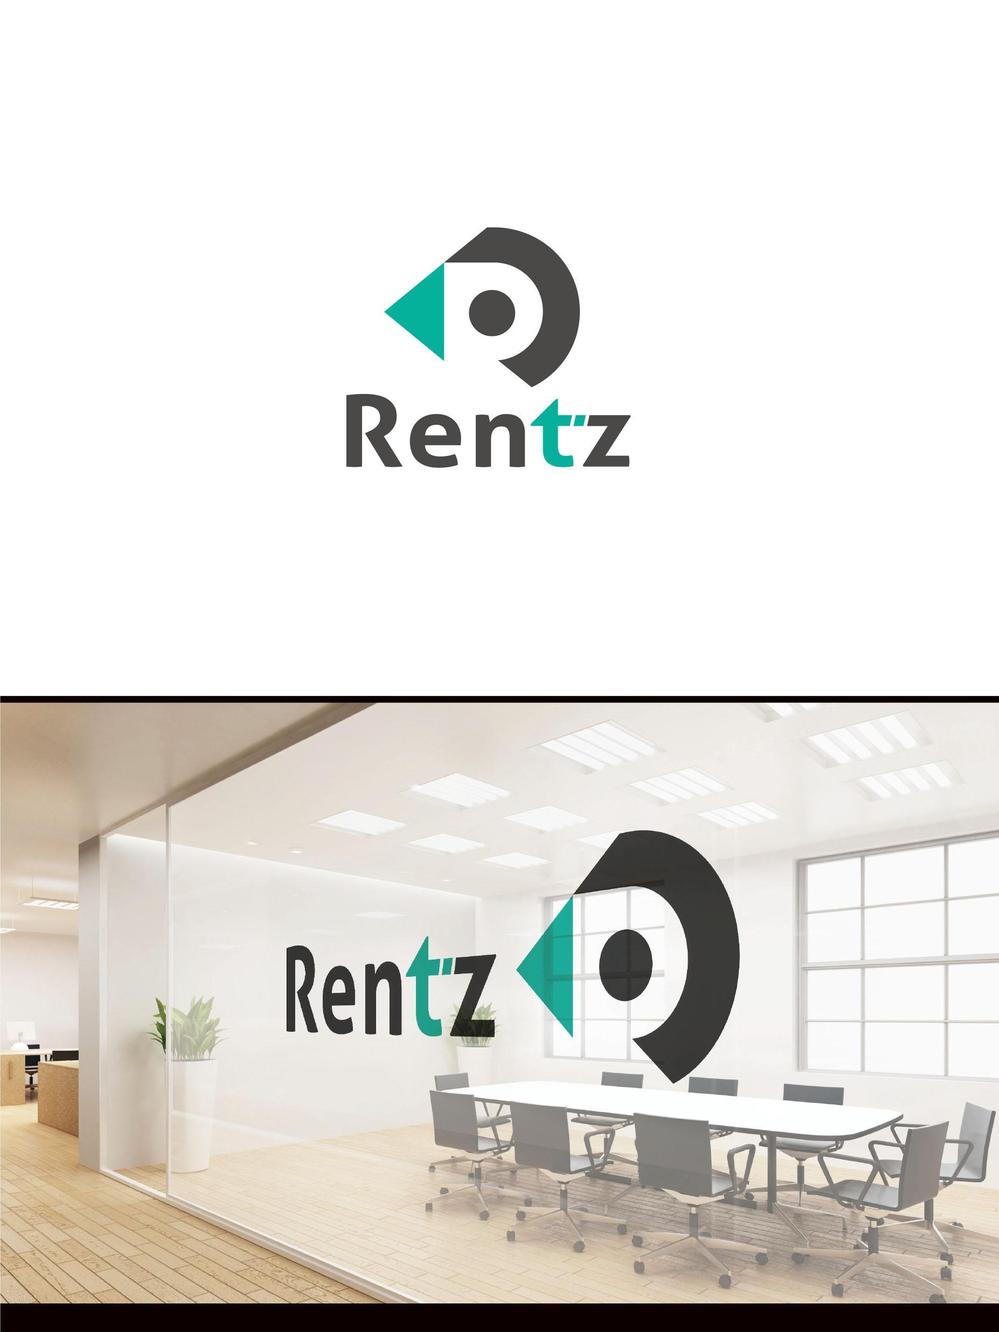 ガジェットレンタルサービス「Rentz」の会社ロゴ